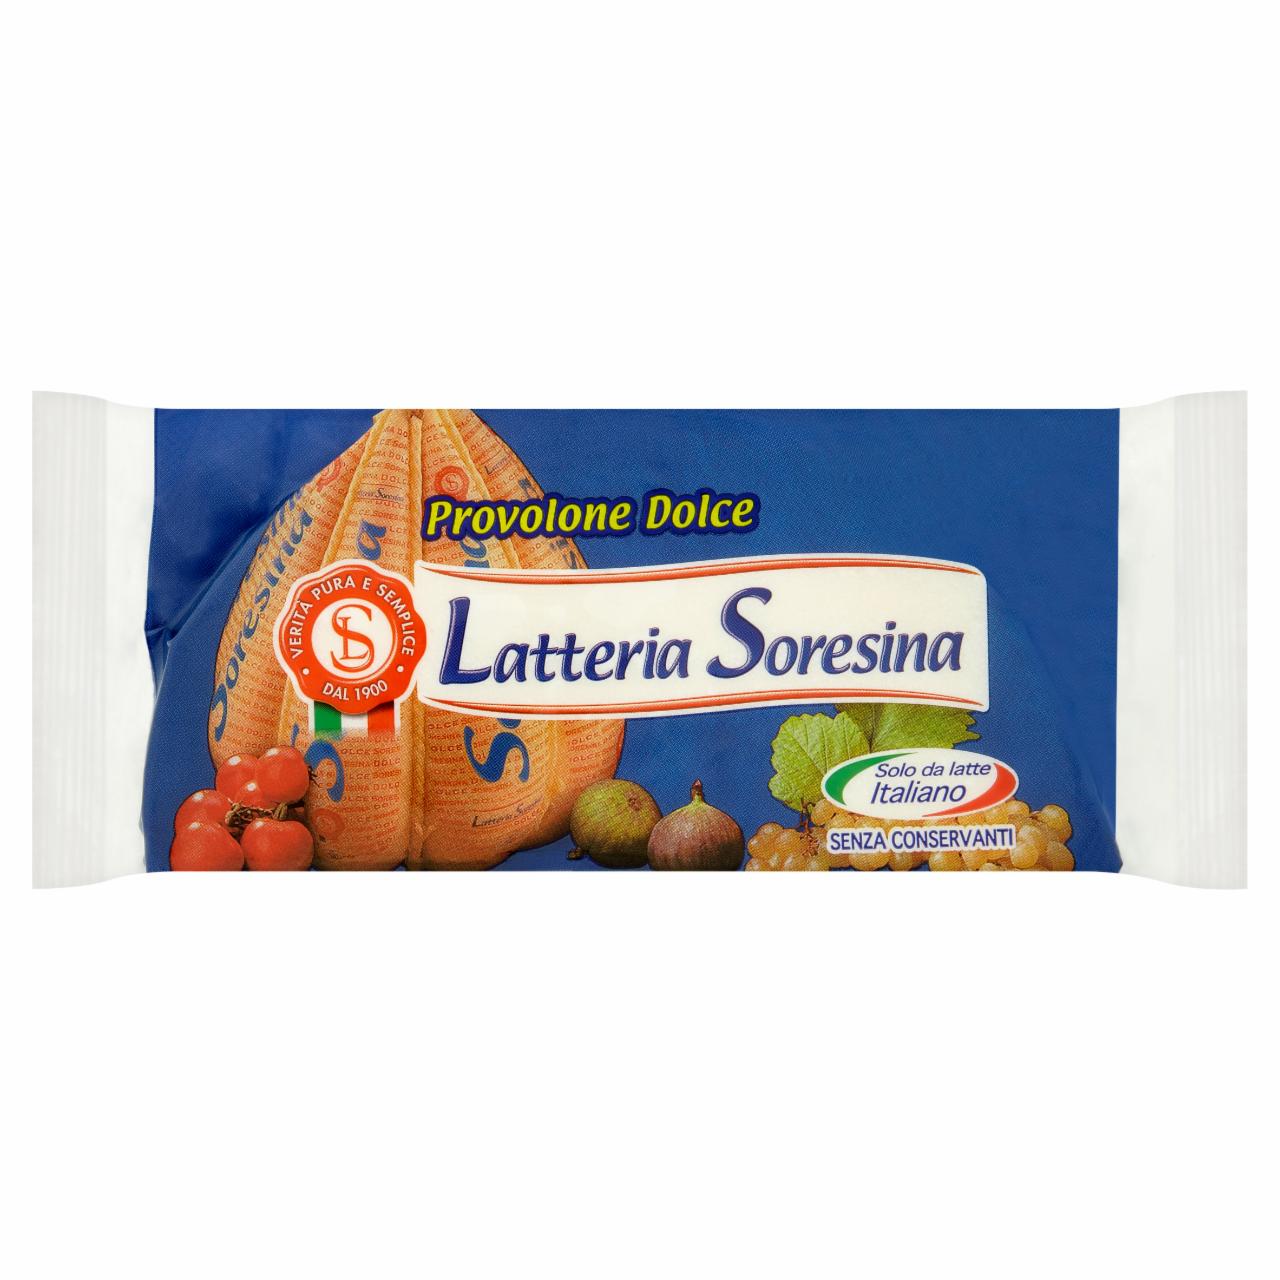 Képek - Latteria Soresina olasz Provolone sajtkülönlegesség 200 g